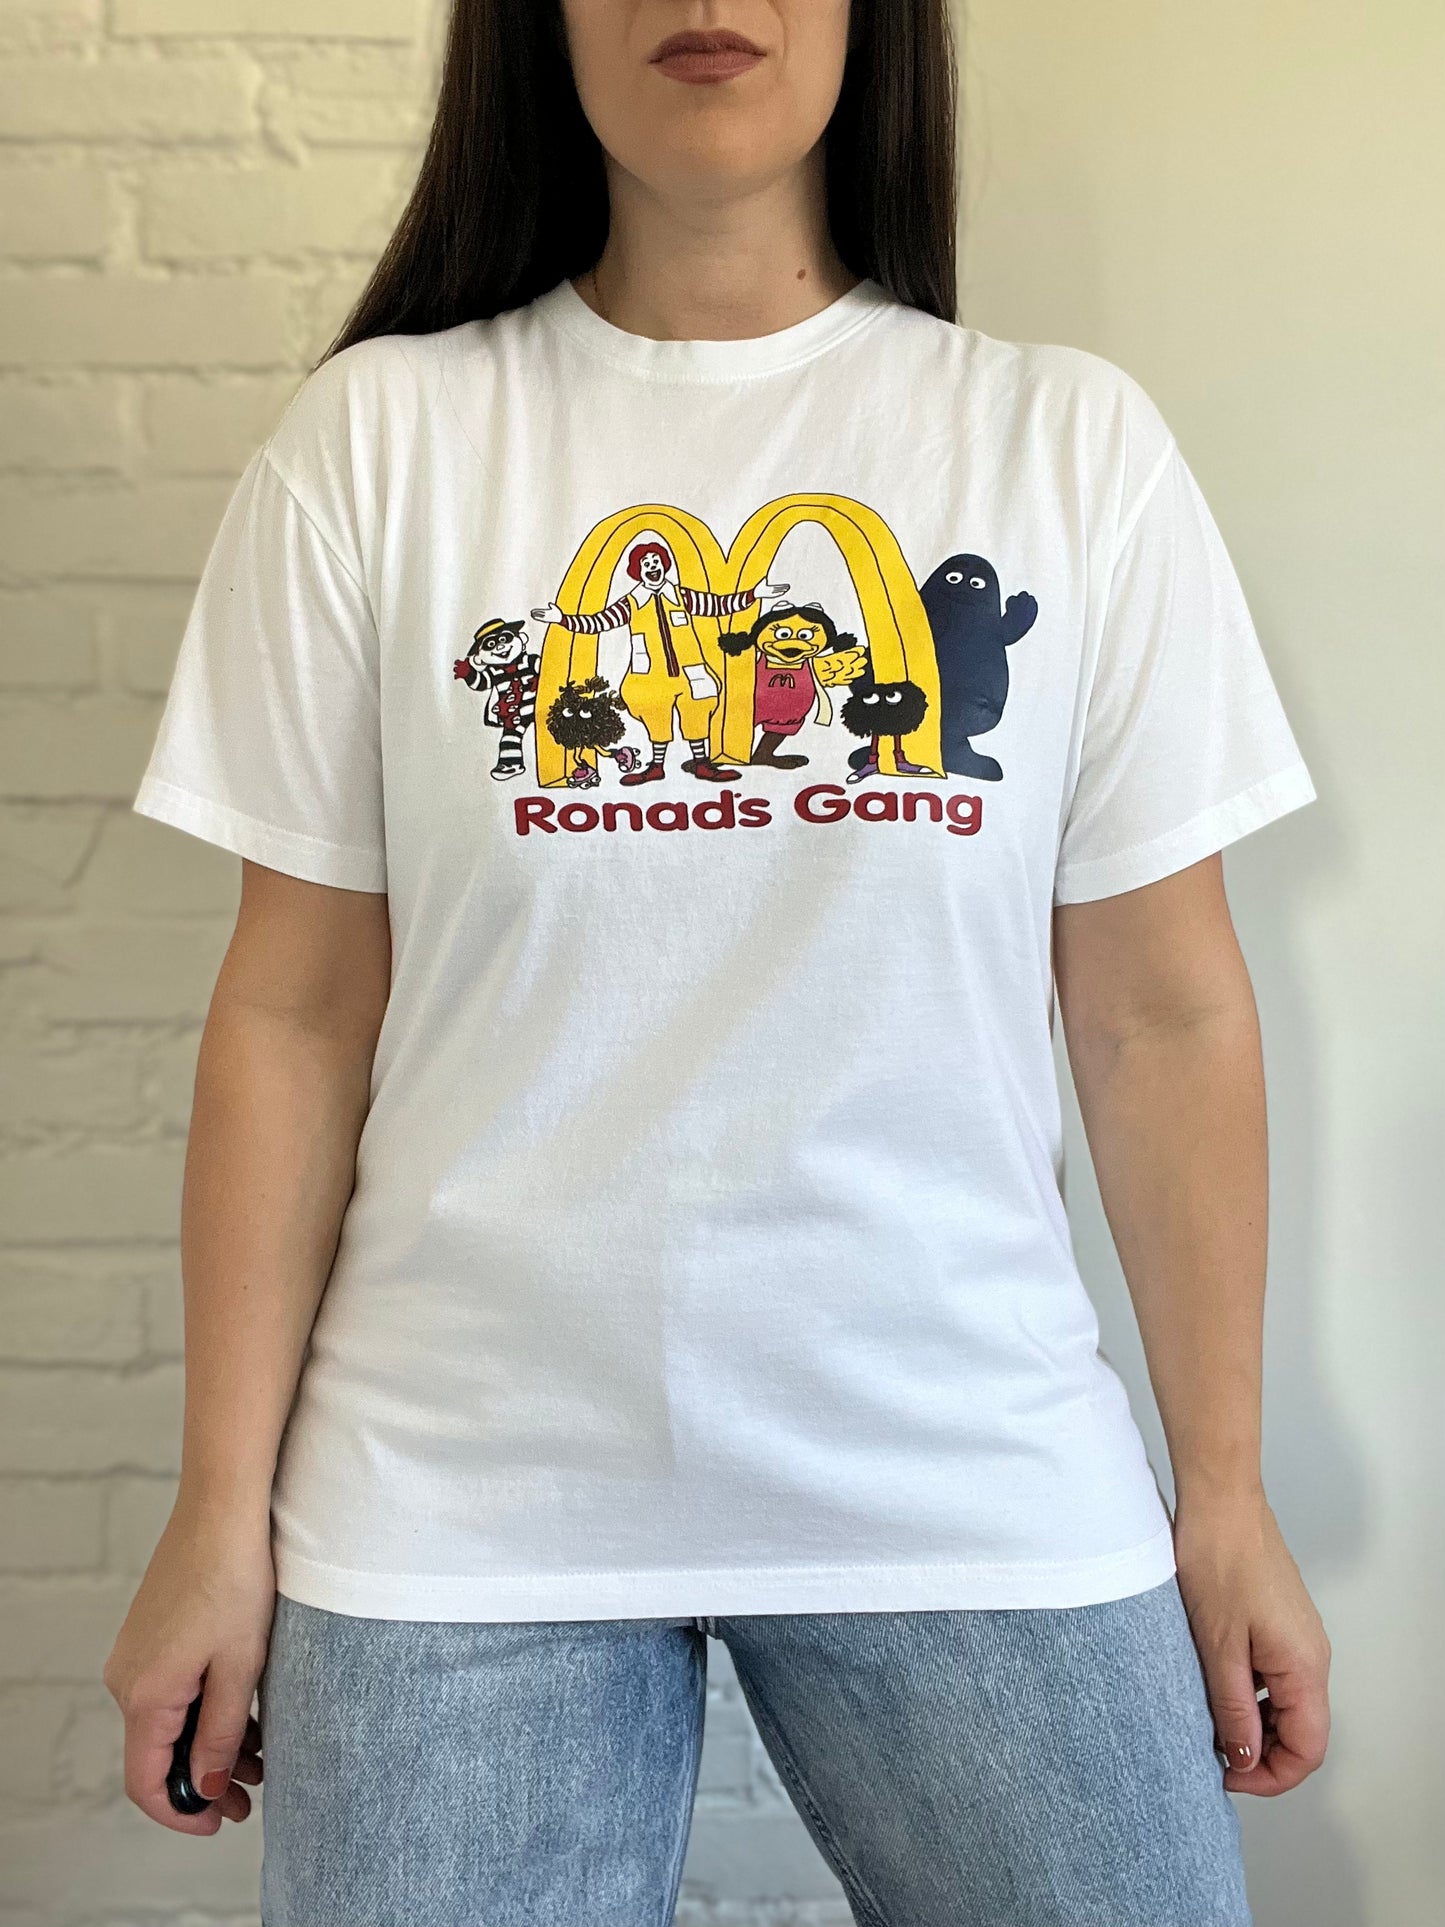 Vintage Ronalds Gang T-Shirt - Size M/L